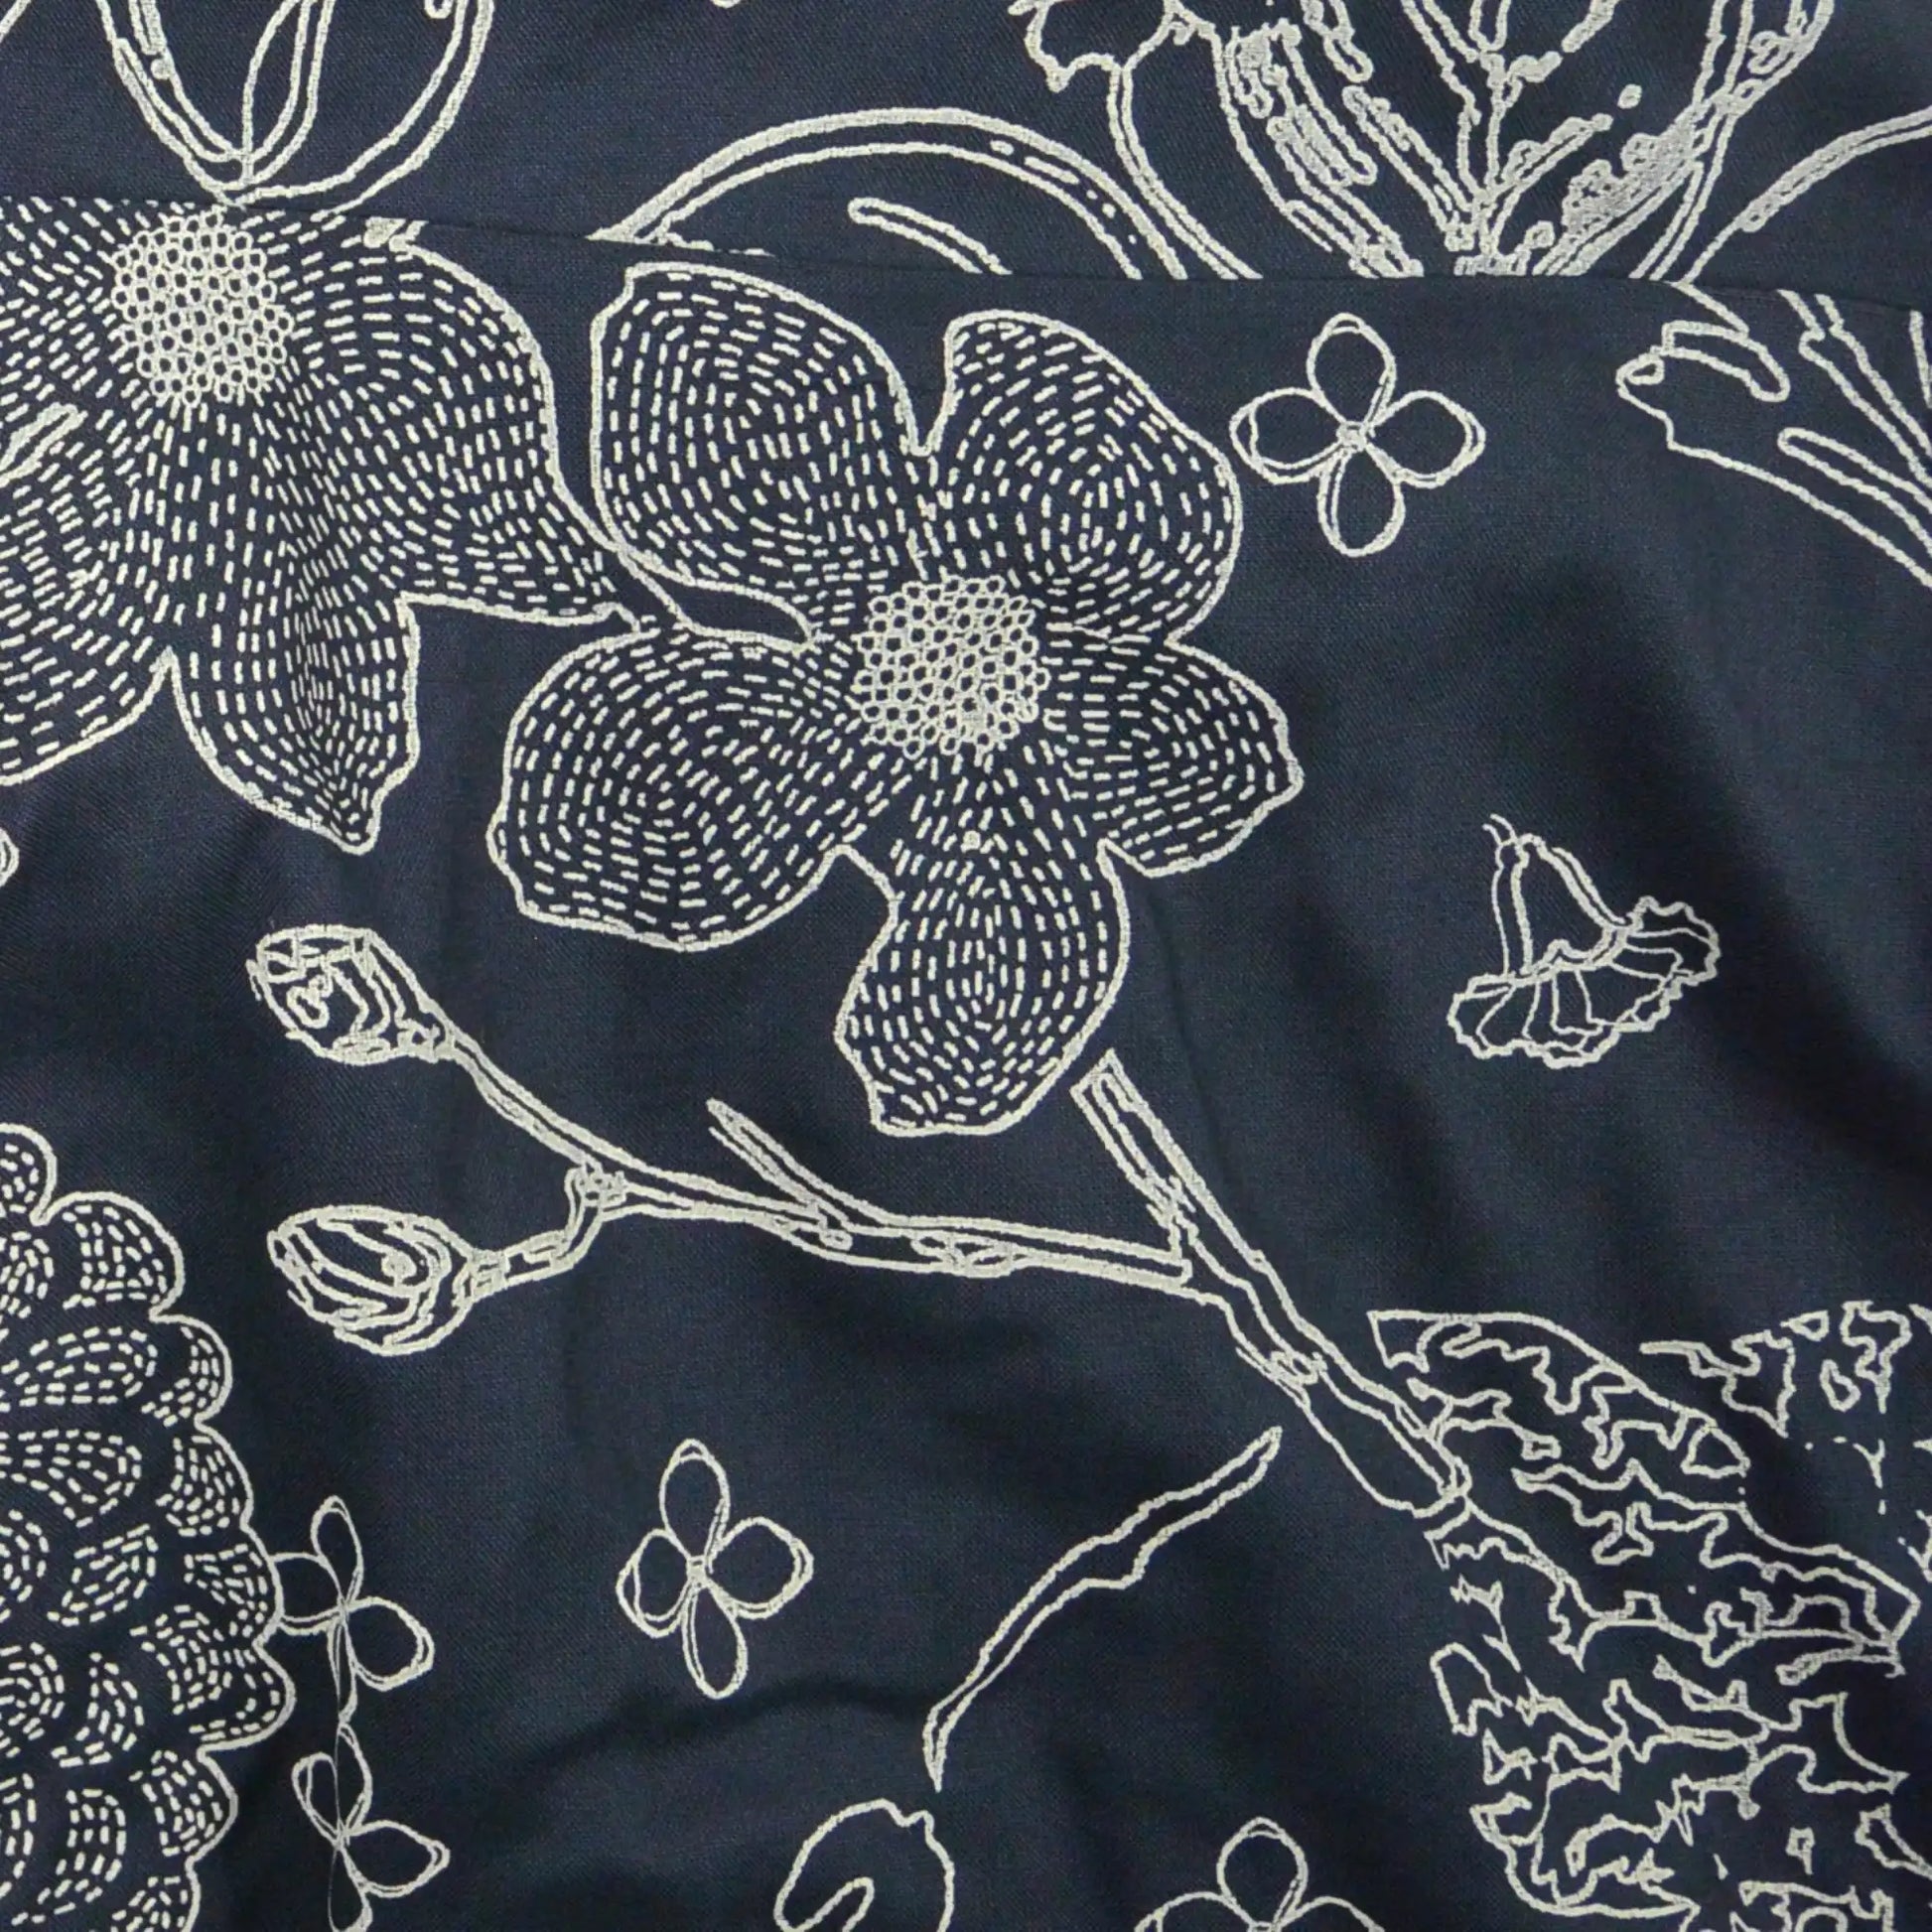 Ausschnitt  Muster des Sommerrock, Maxirock aus Viskose, Nachtblau mit Blumenmotiven. Elastischer Schlupfbund.